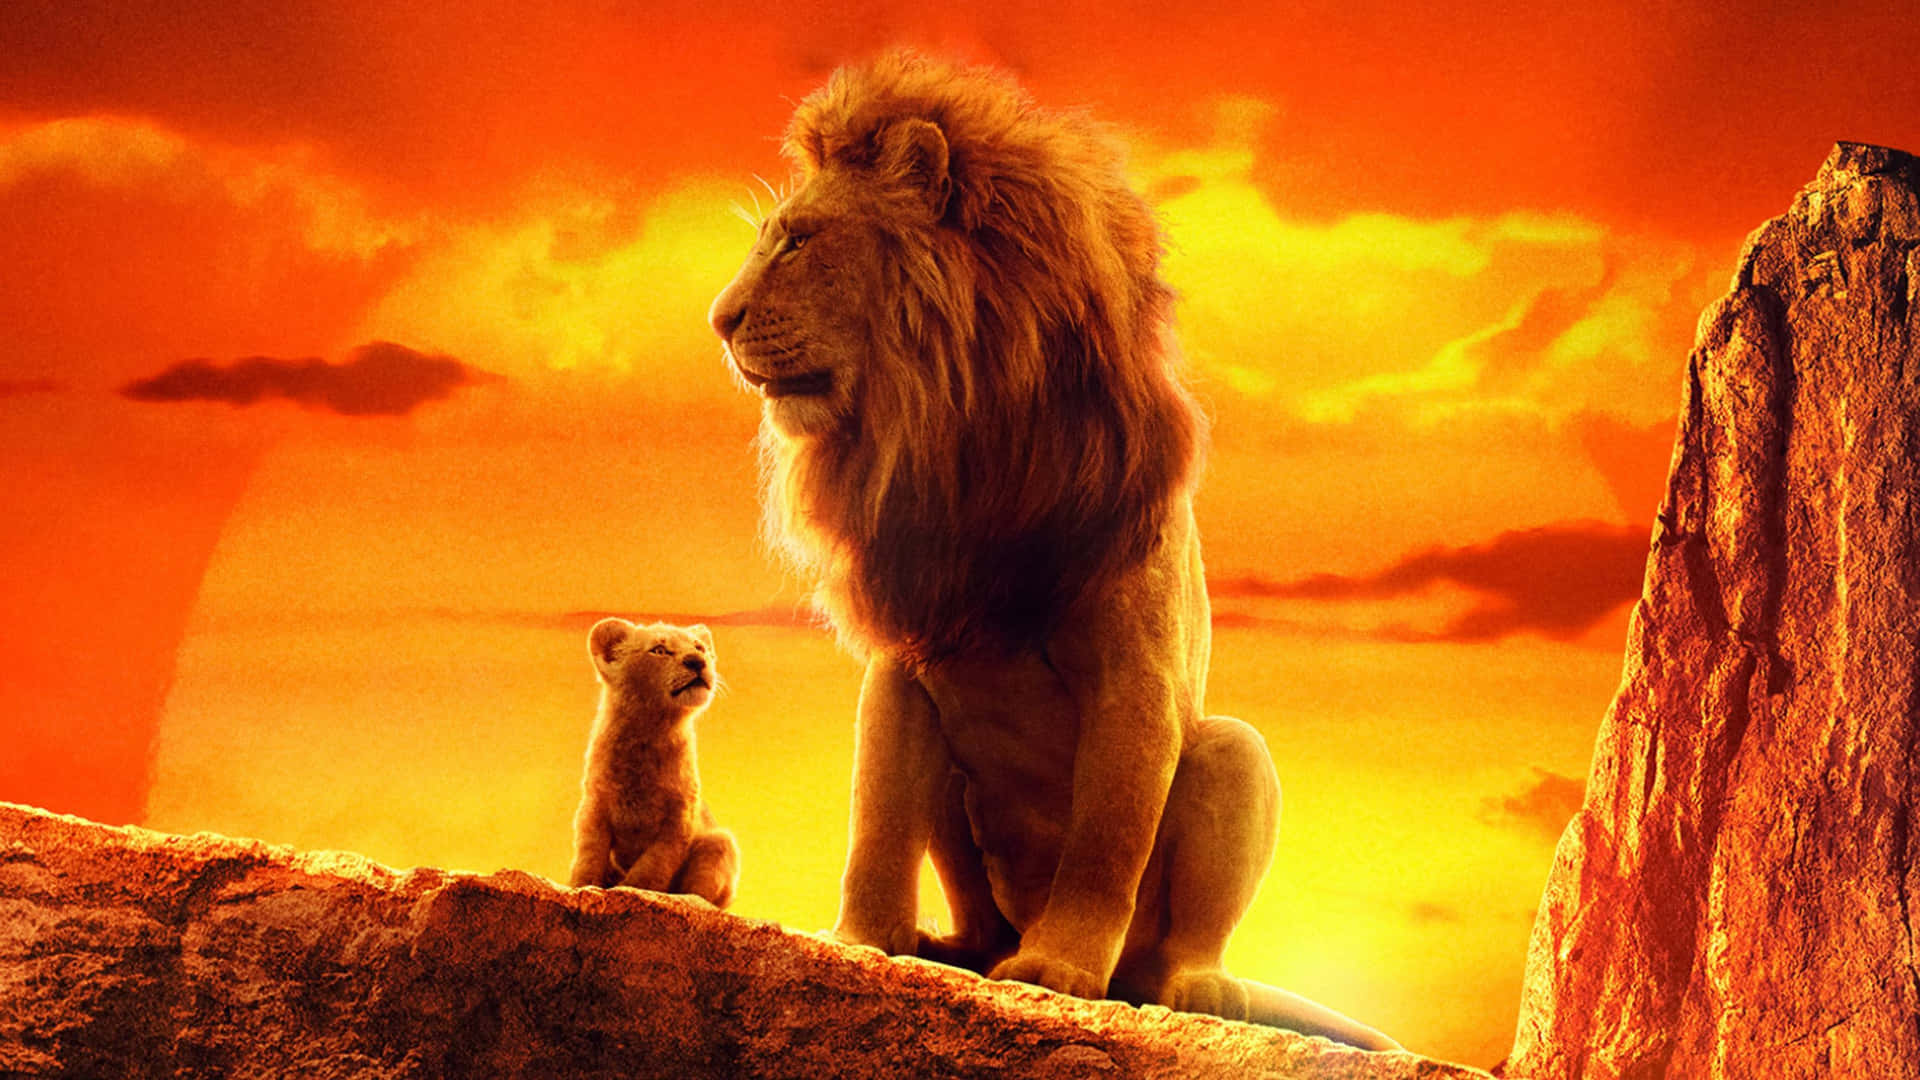 Lion King Sunset Simbaand Mufasa Background